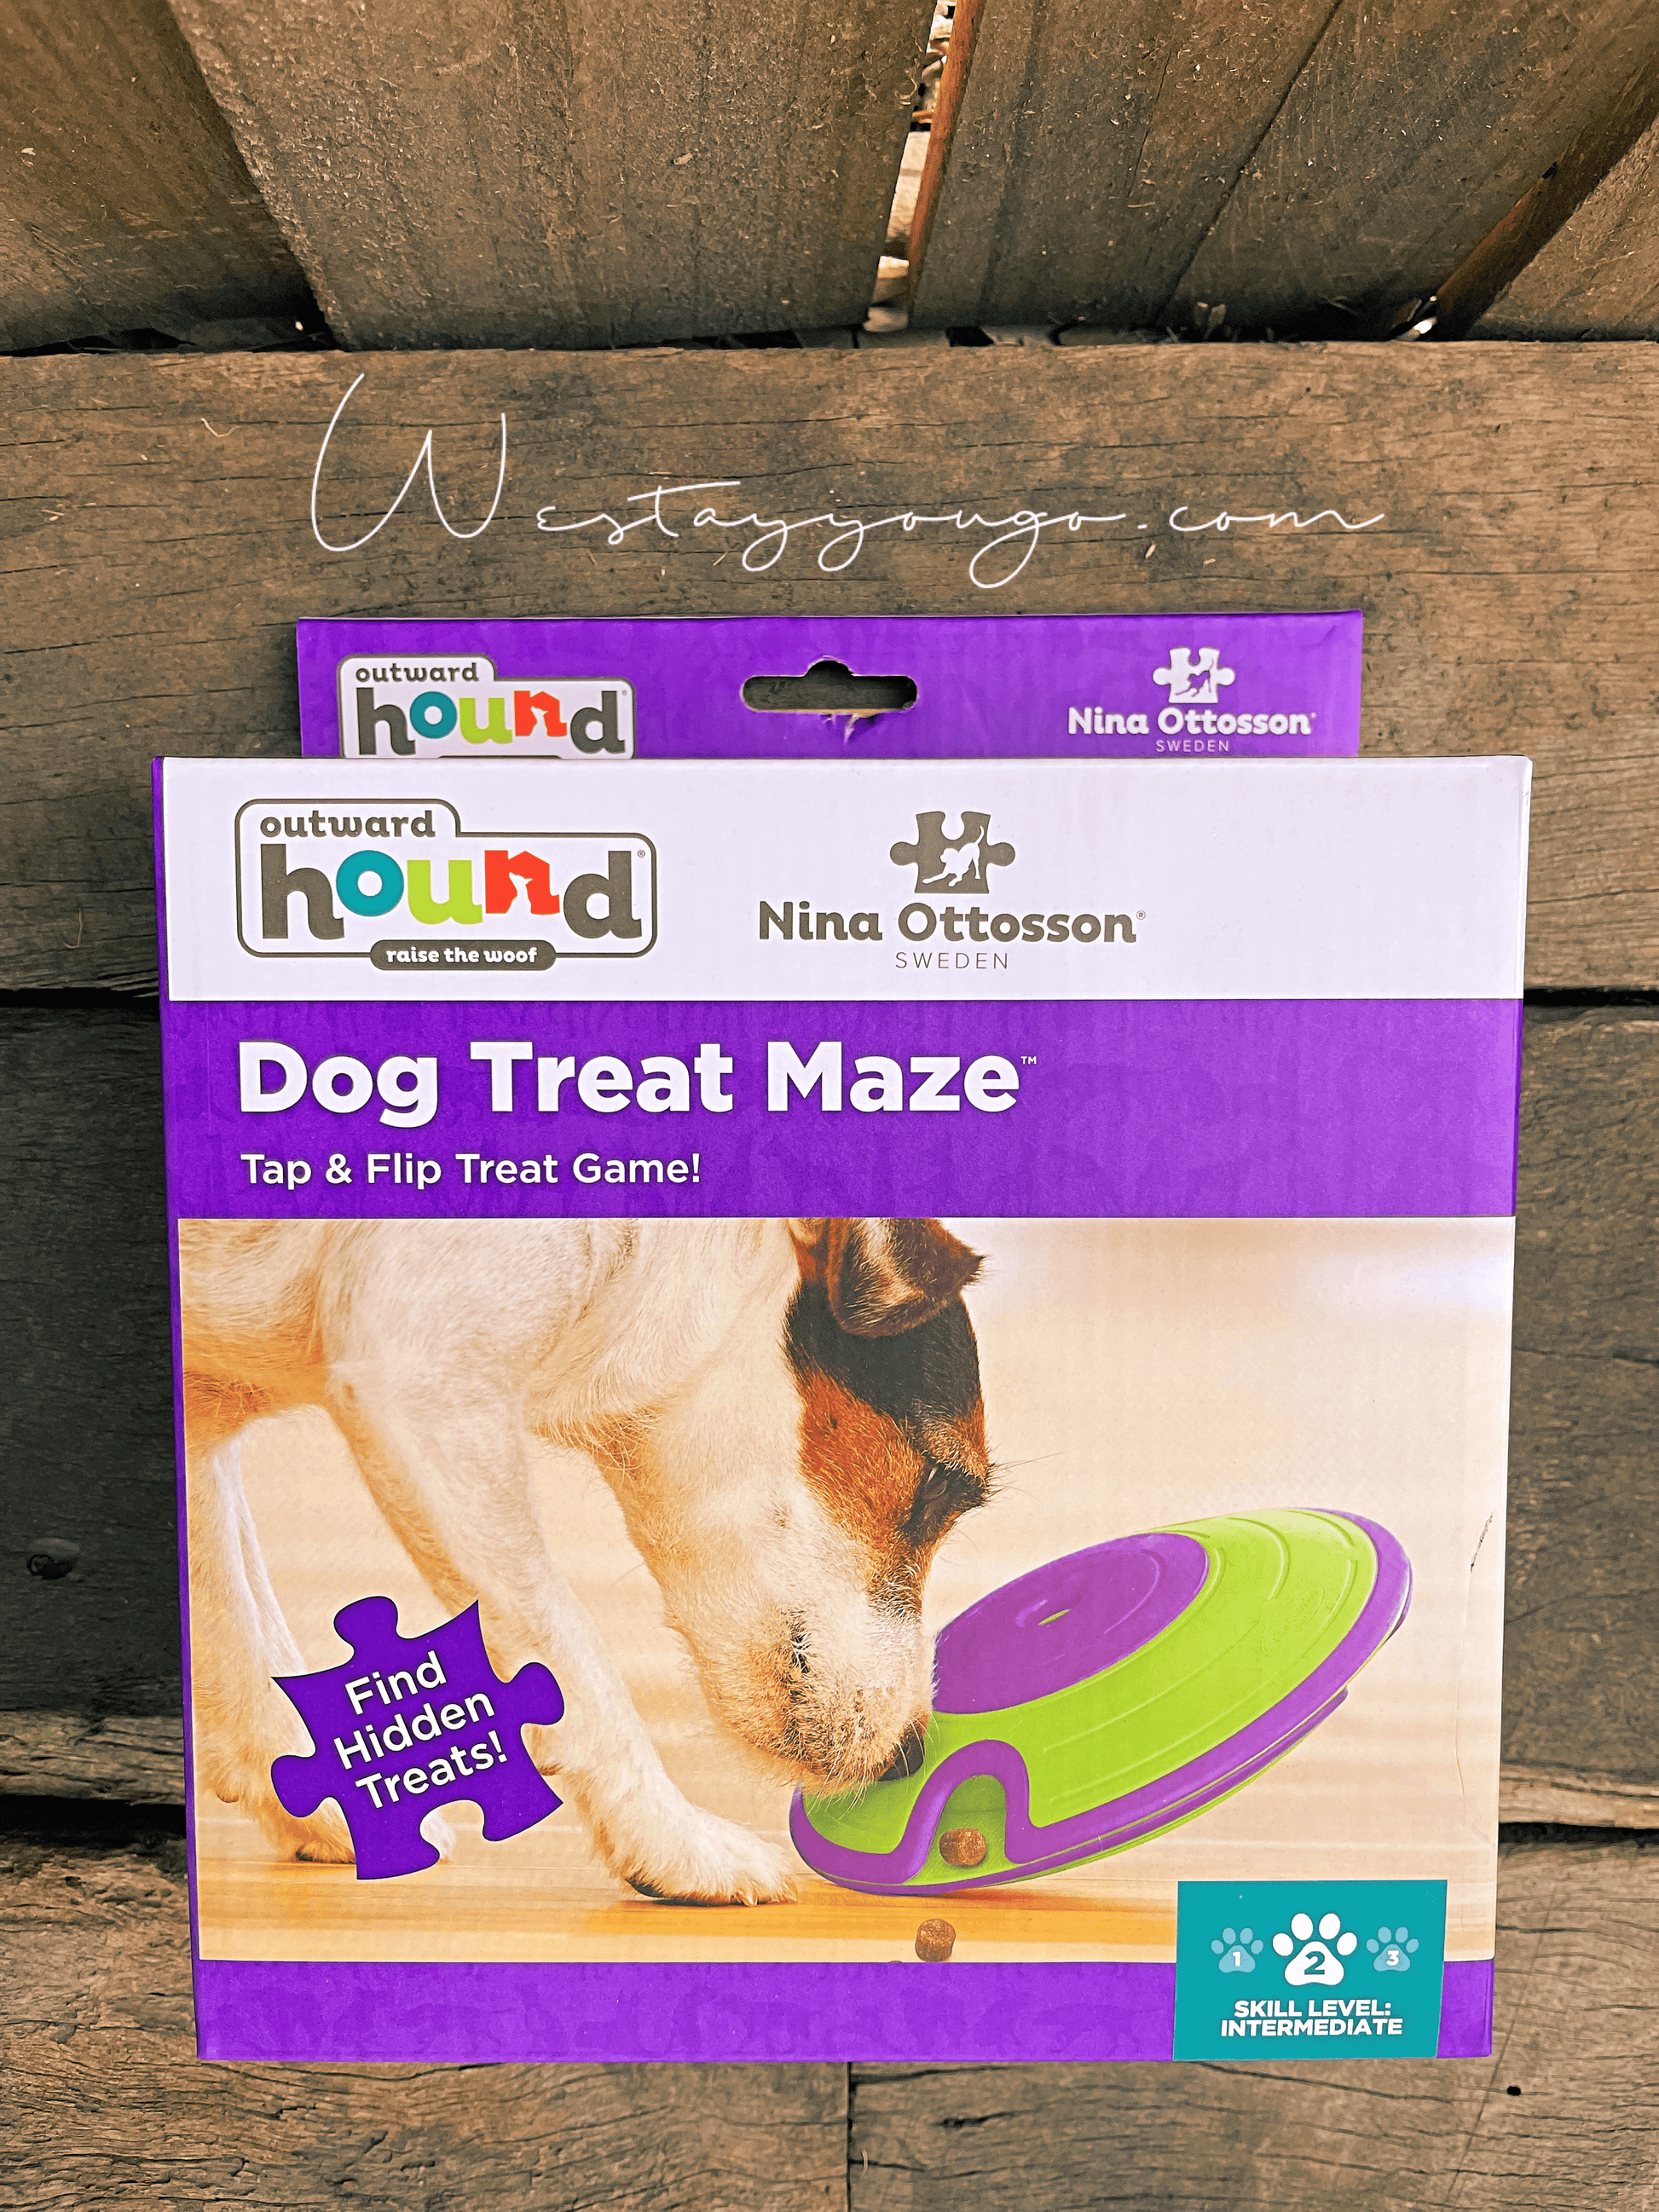 Treat maze - Dog – We Stay You Go